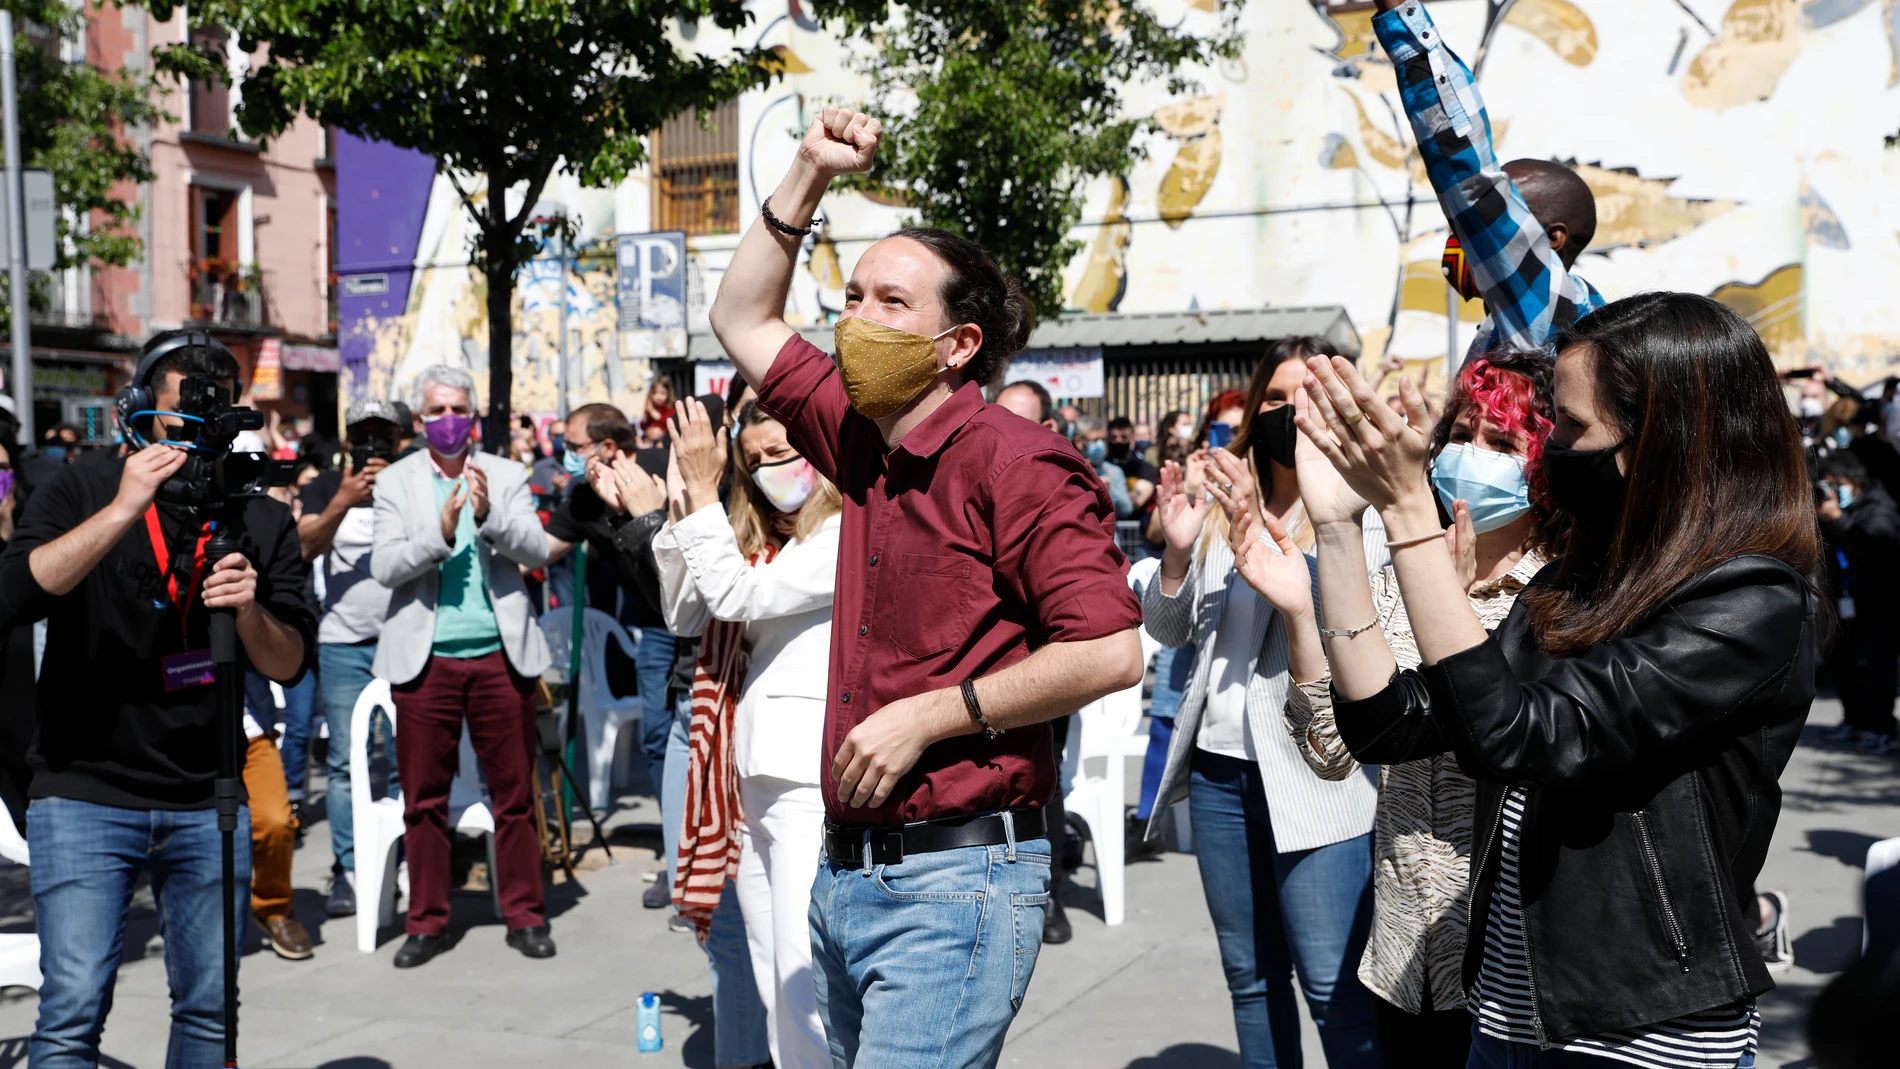 Mitin de Pablo Iglesias para la campaña de las elecciones de la comunidad de Madrid el 4 de mayo